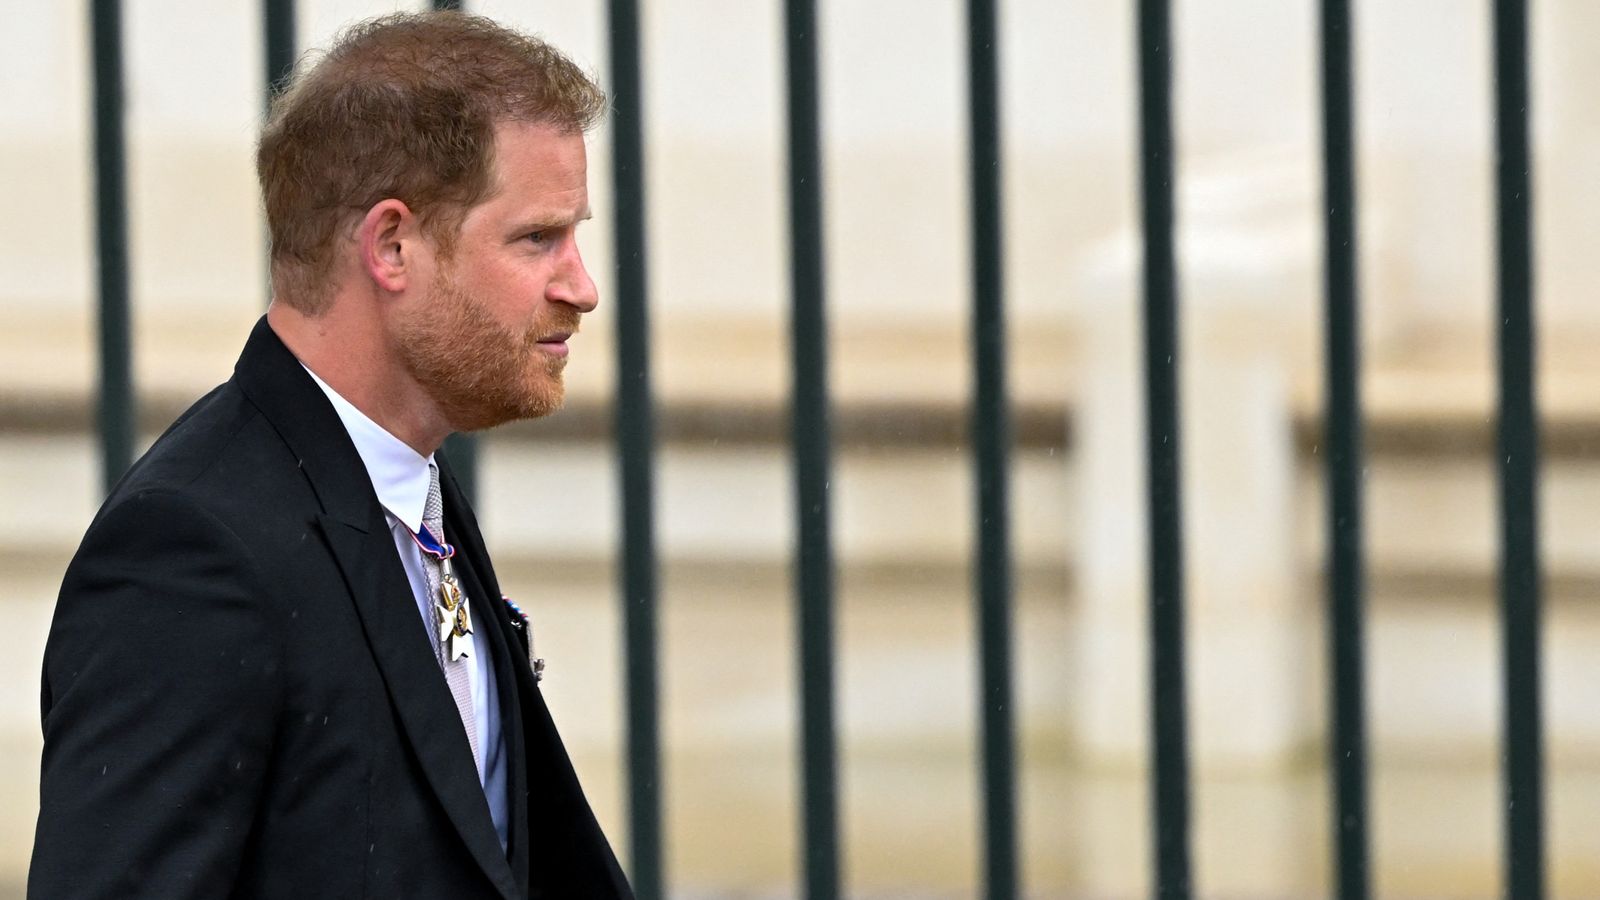 الأمير هاري “غير مدعو” للظهور على شرفة قصر باكنغهام بعد التتويج |  أخبار المملكة المتحدة